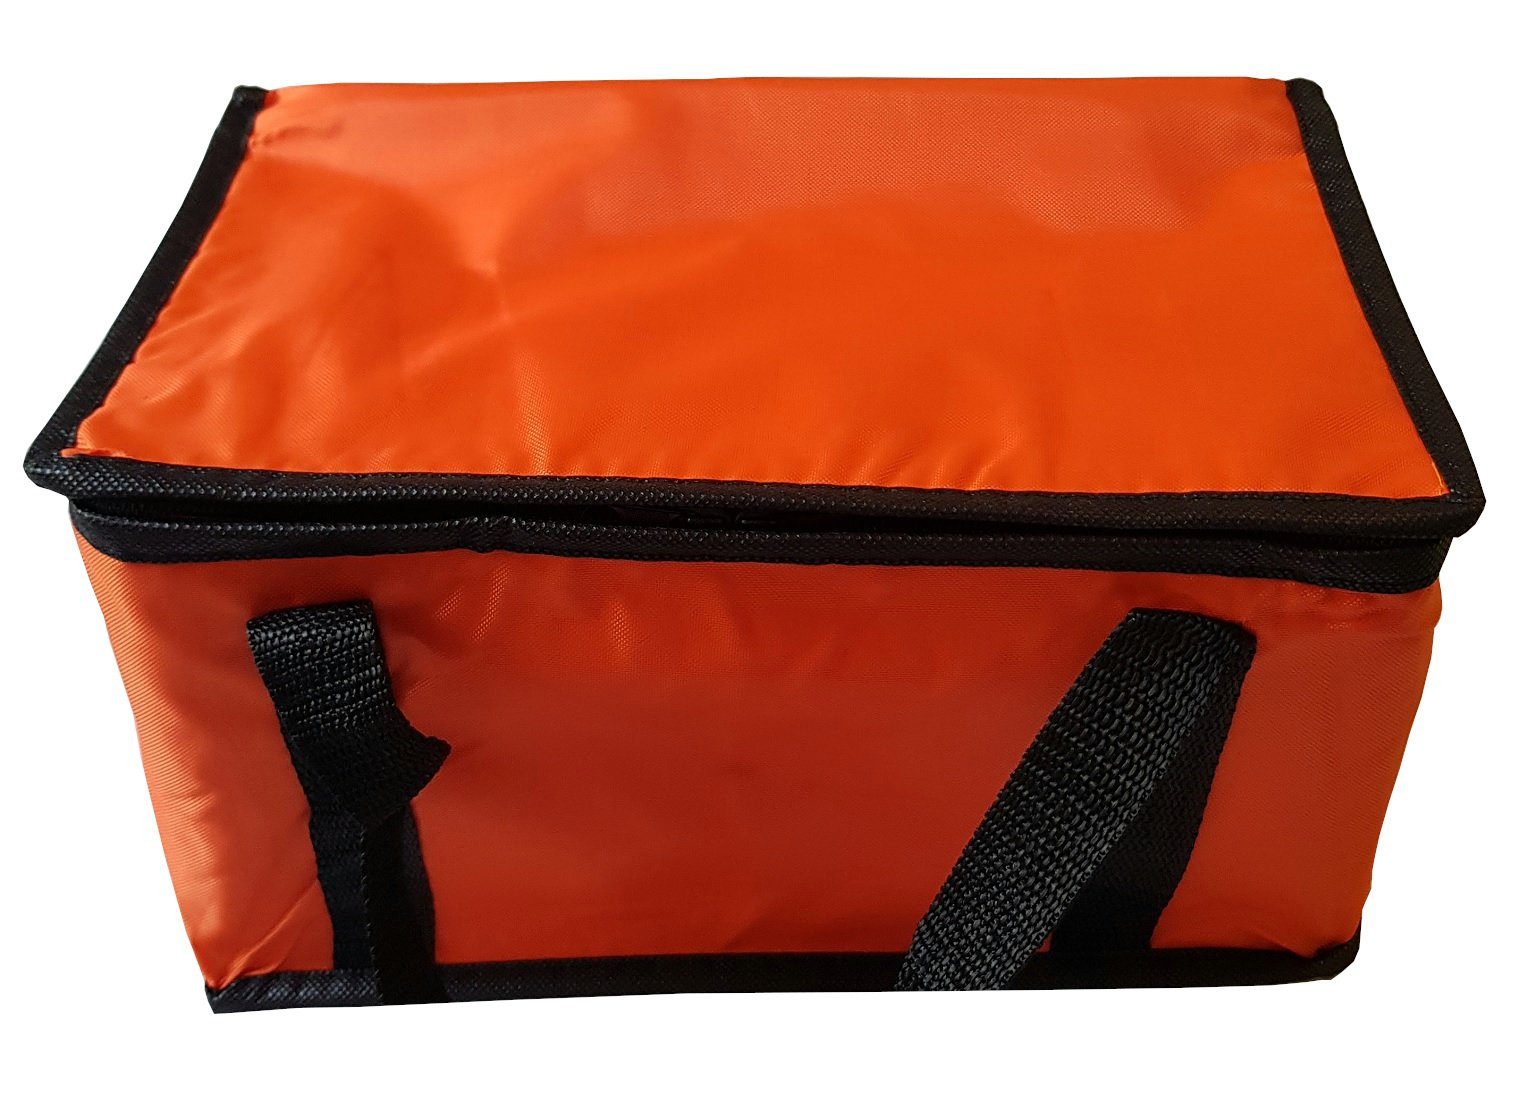 Kühlbox Orange Einkaufstasche Kühltasche 9,5L Picknicktasche Kühltasche Provance Isoliertasche